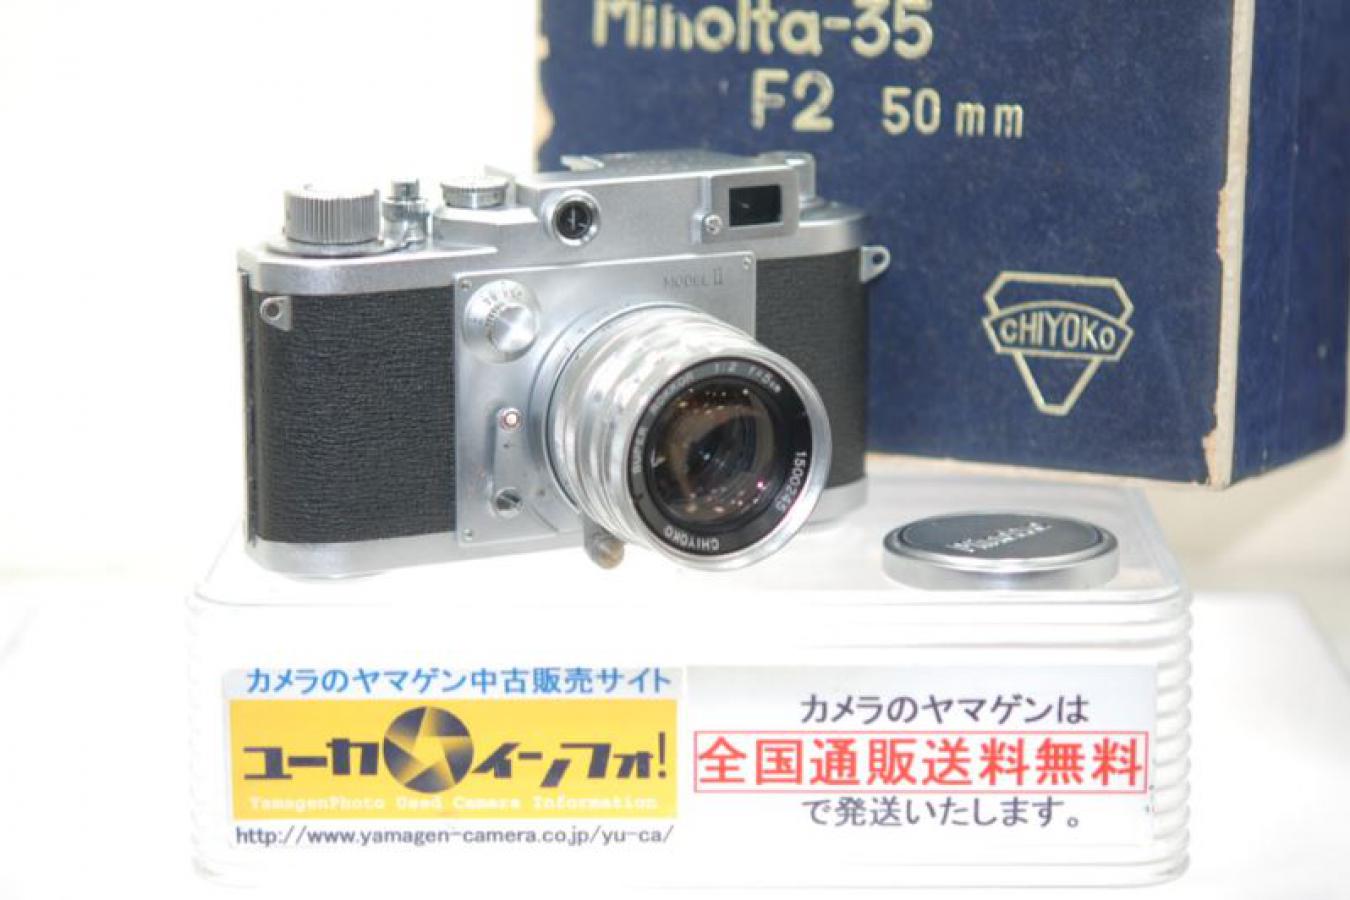 ミノルタ 千代田光学製 ミノルタ35 II型 スーパーROKKOR 5cm F2付 OH済 